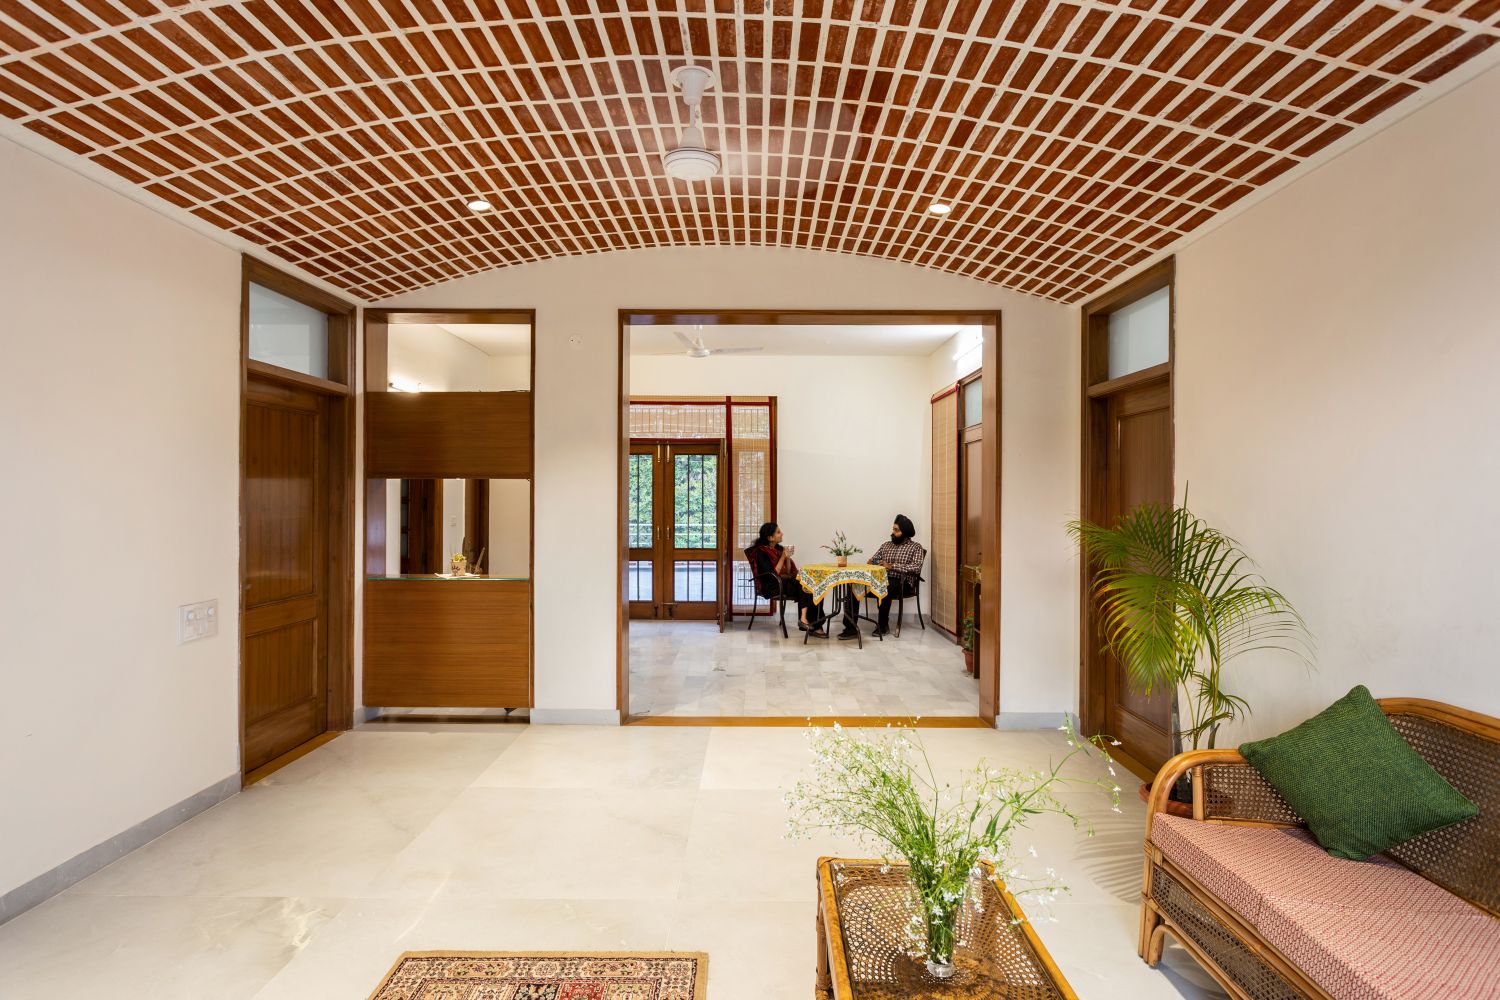 Residence 2105, Chandigarh, by Studio Mohenjodaro 14